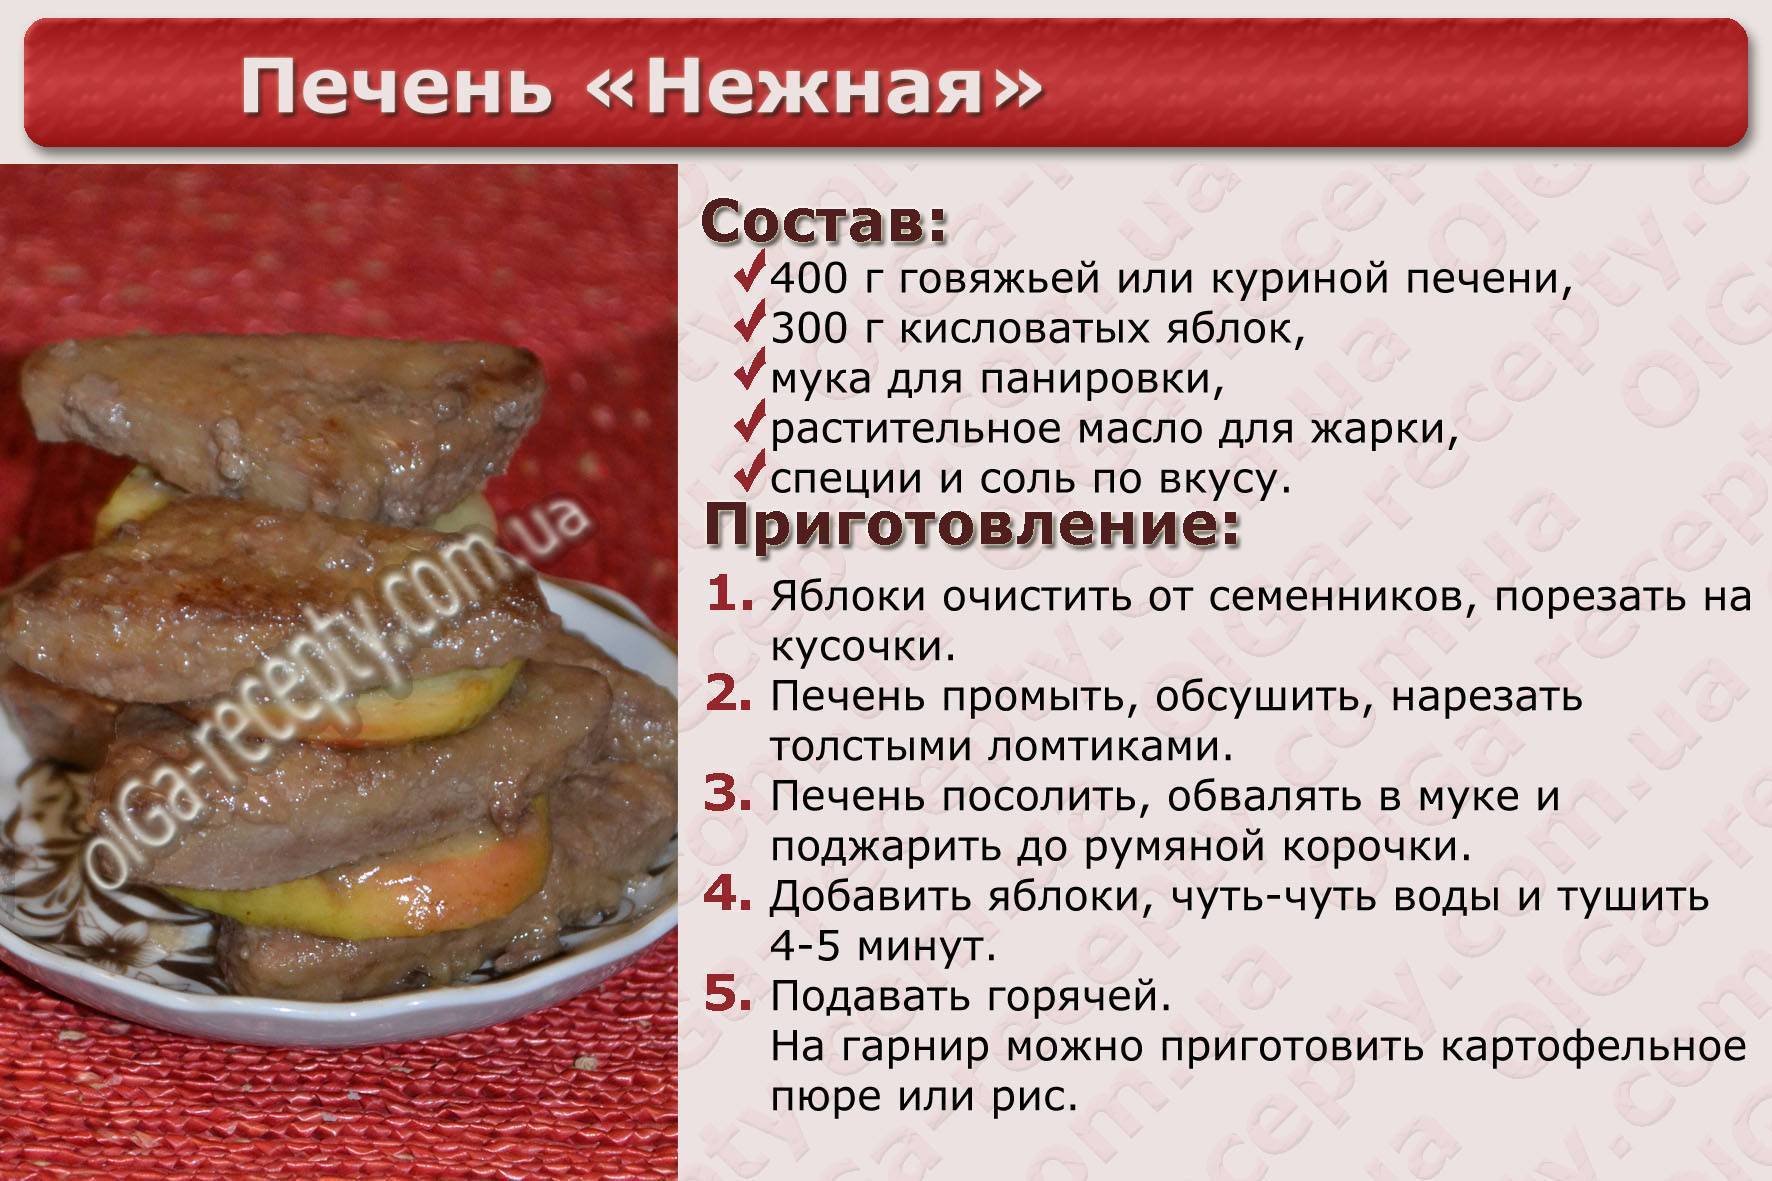 Простой рецепт приготовления печени. Рецепты блюд в картинках с описанием. Рецепты в картинках печенка. Говяжья печень рецептура. Рецепты в картинках с описанием.